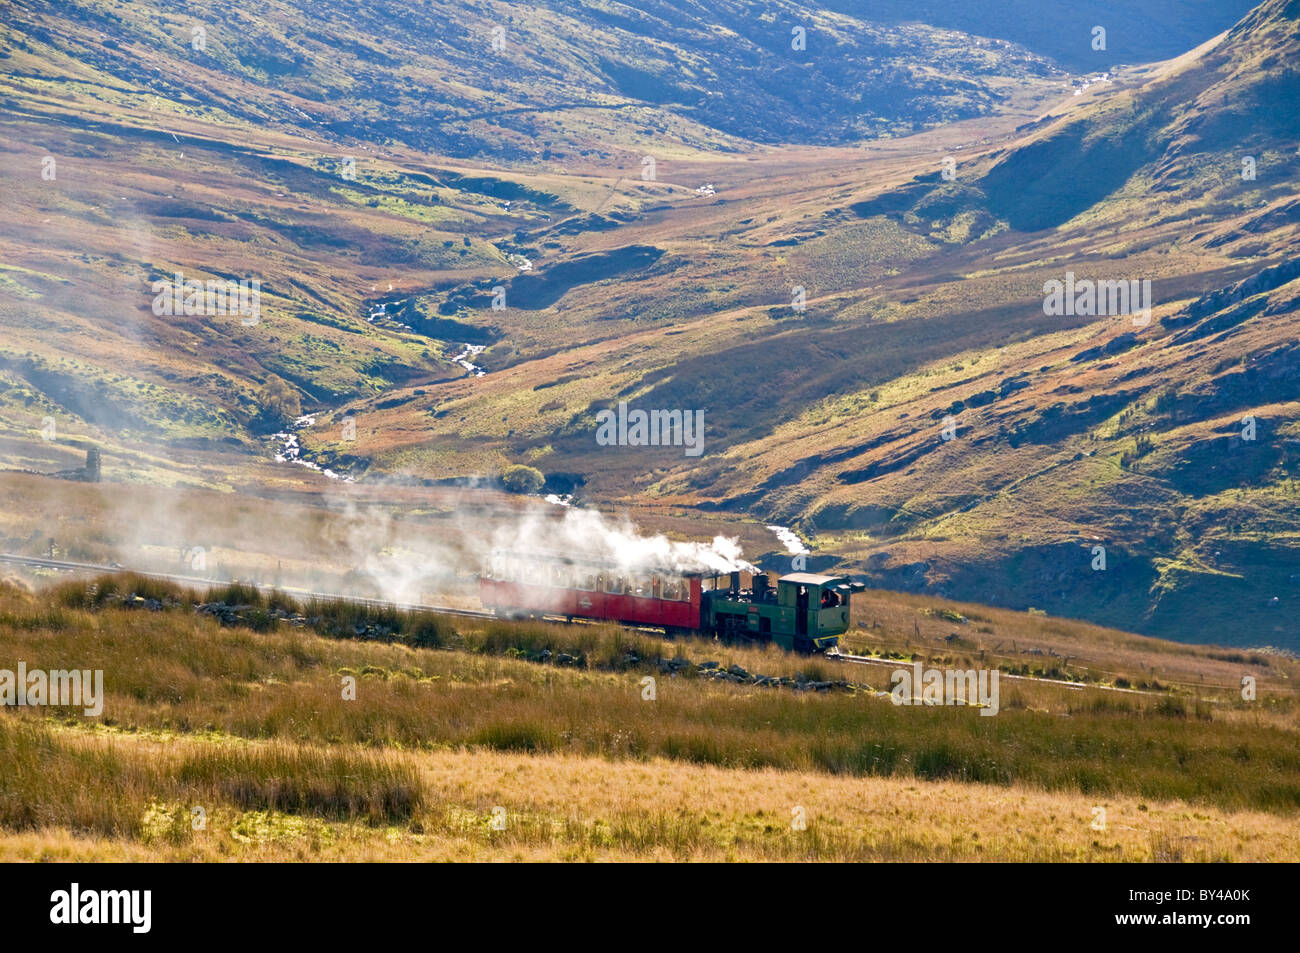 Snowdon Mountain Railway, Mount Snowdon, Snowdonia National Park, North Wales, UK Stockfoto